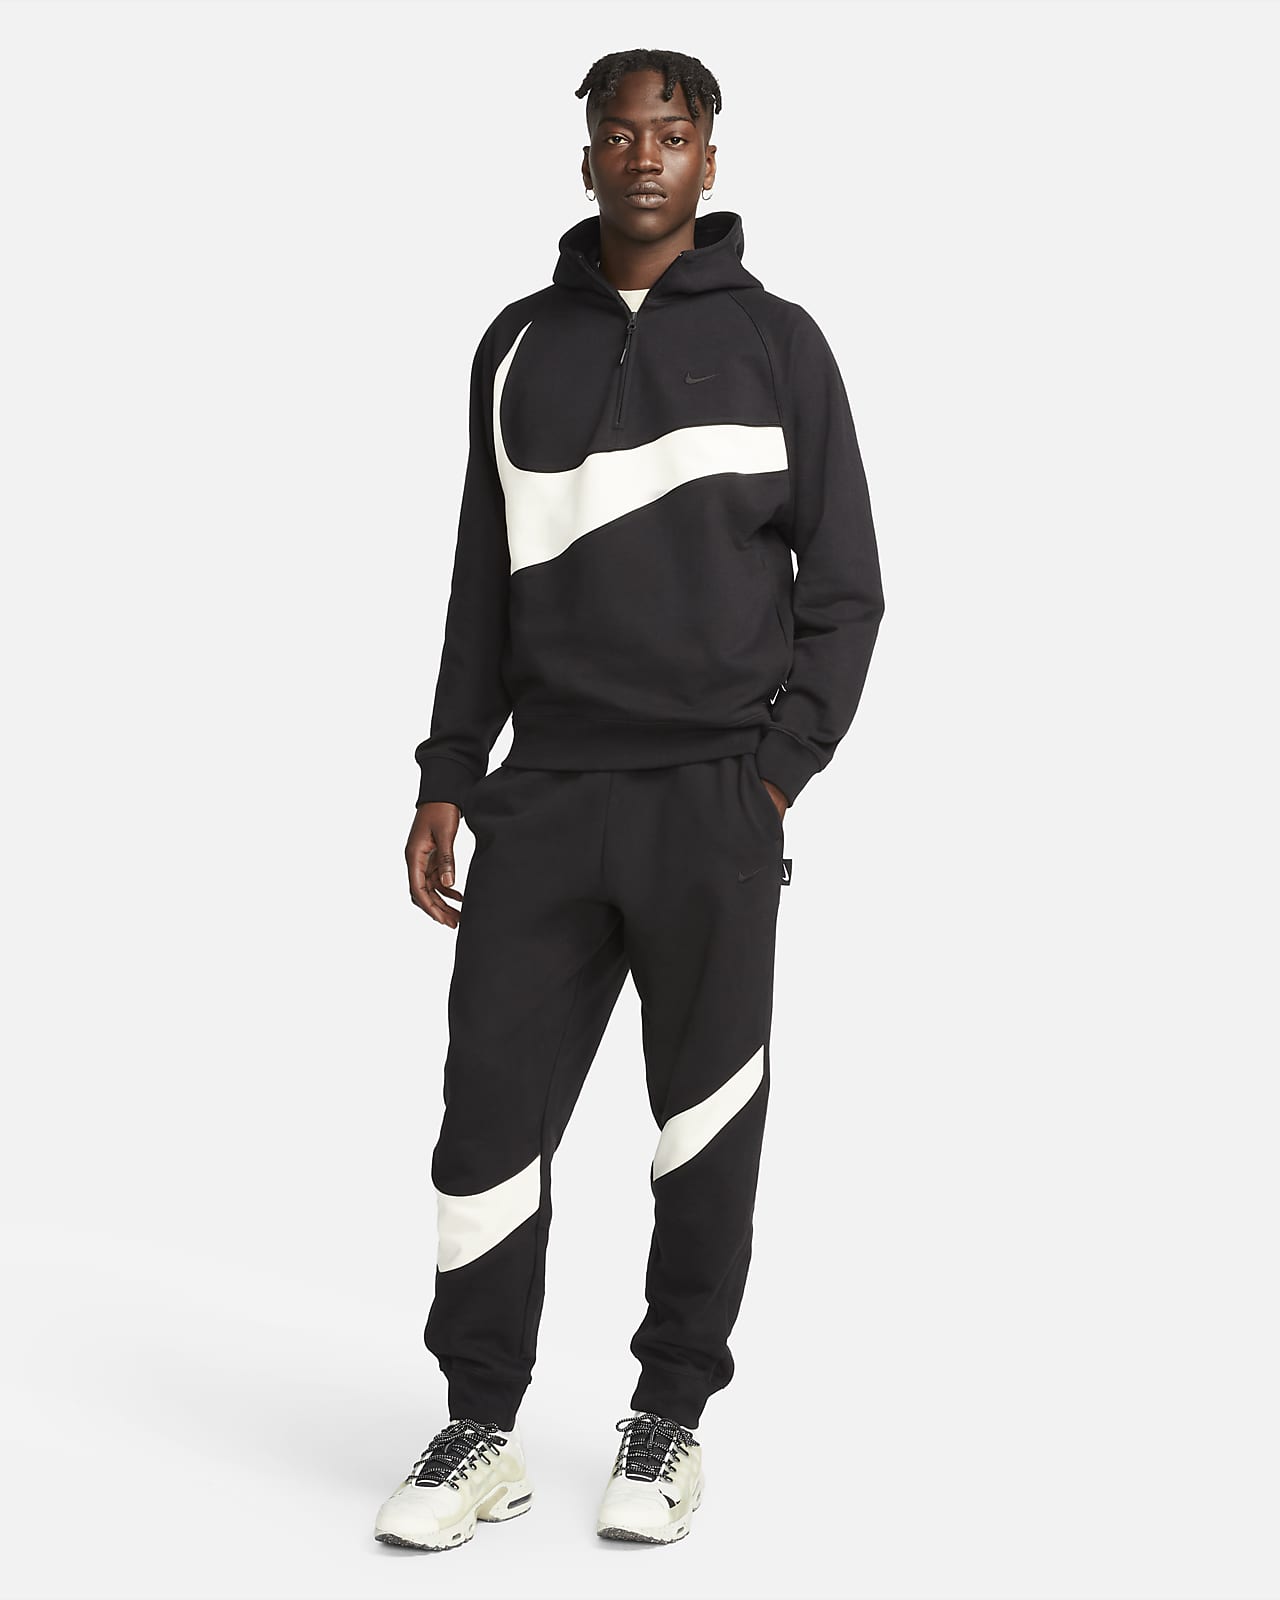 Nike Men's and Big Men's Sportswear Swoosh League Fleece Trousers